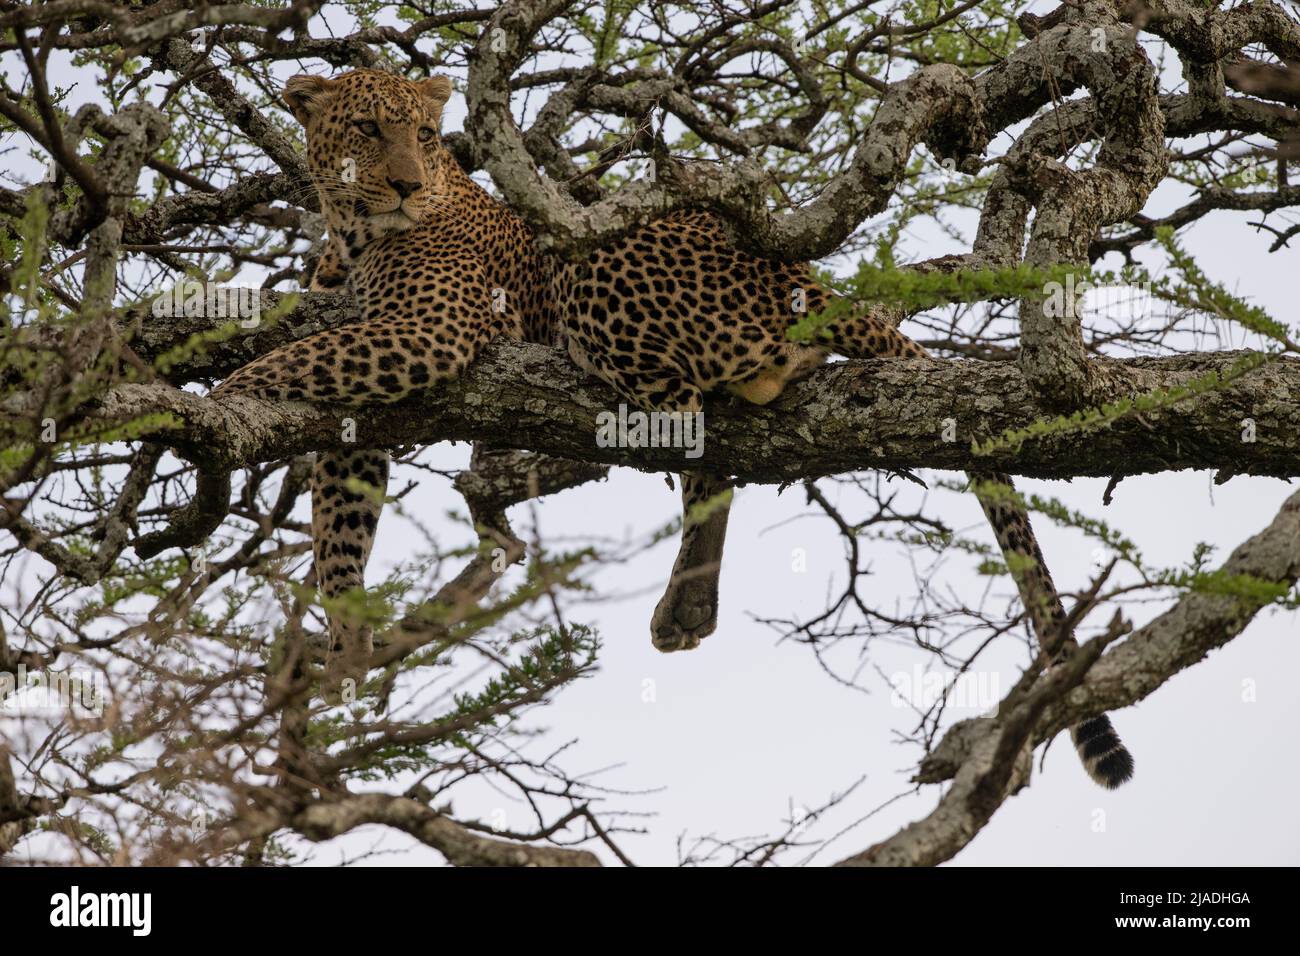 Leopard in Acacia Tree, Tanzania Stock Photo